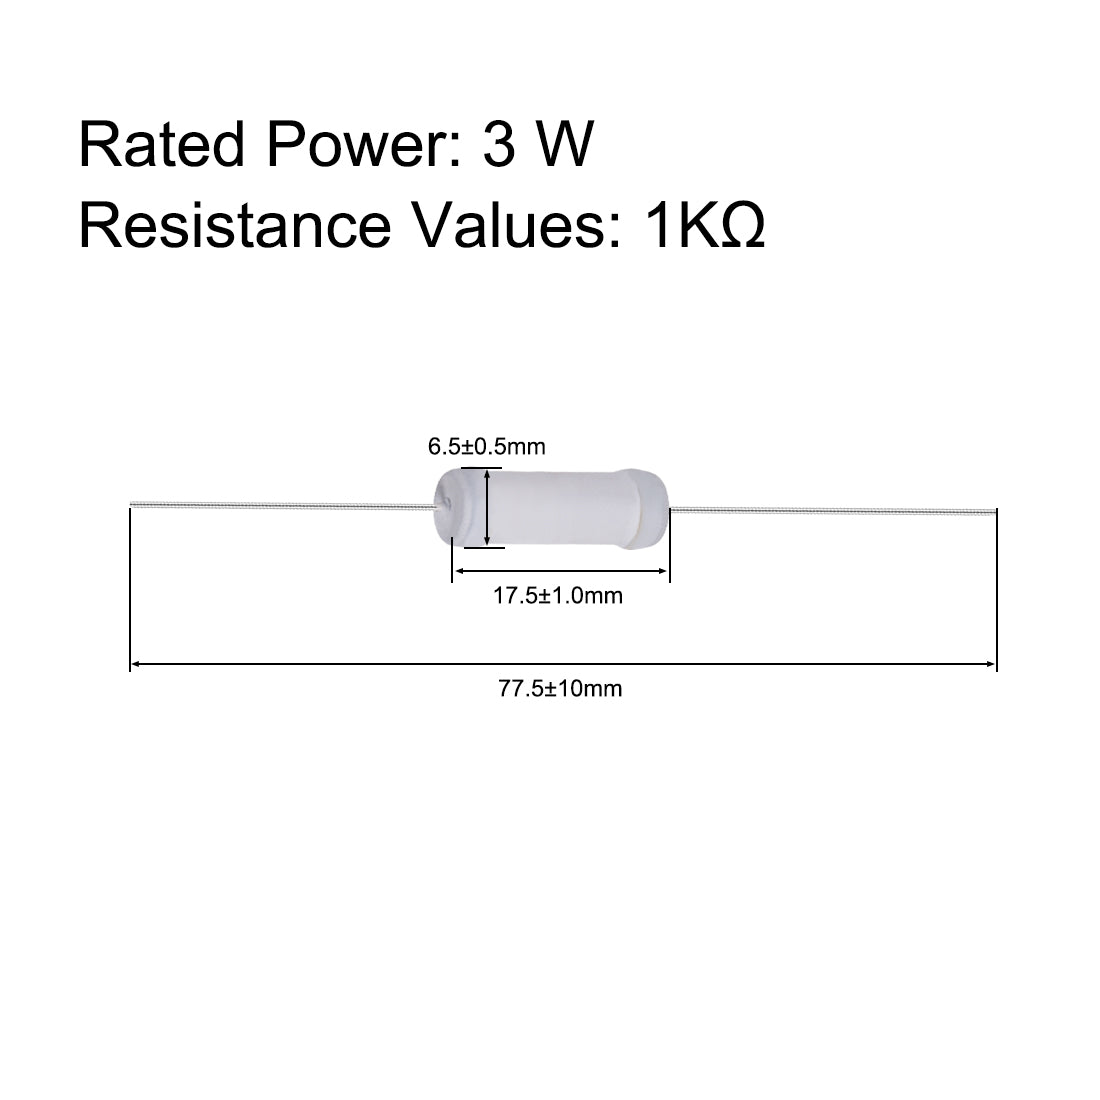 uxcell Uxcell 20pcs 3W 3 Watt Metal Oxide Film Resistor Lead 1K Ohm ±5% Tolerance